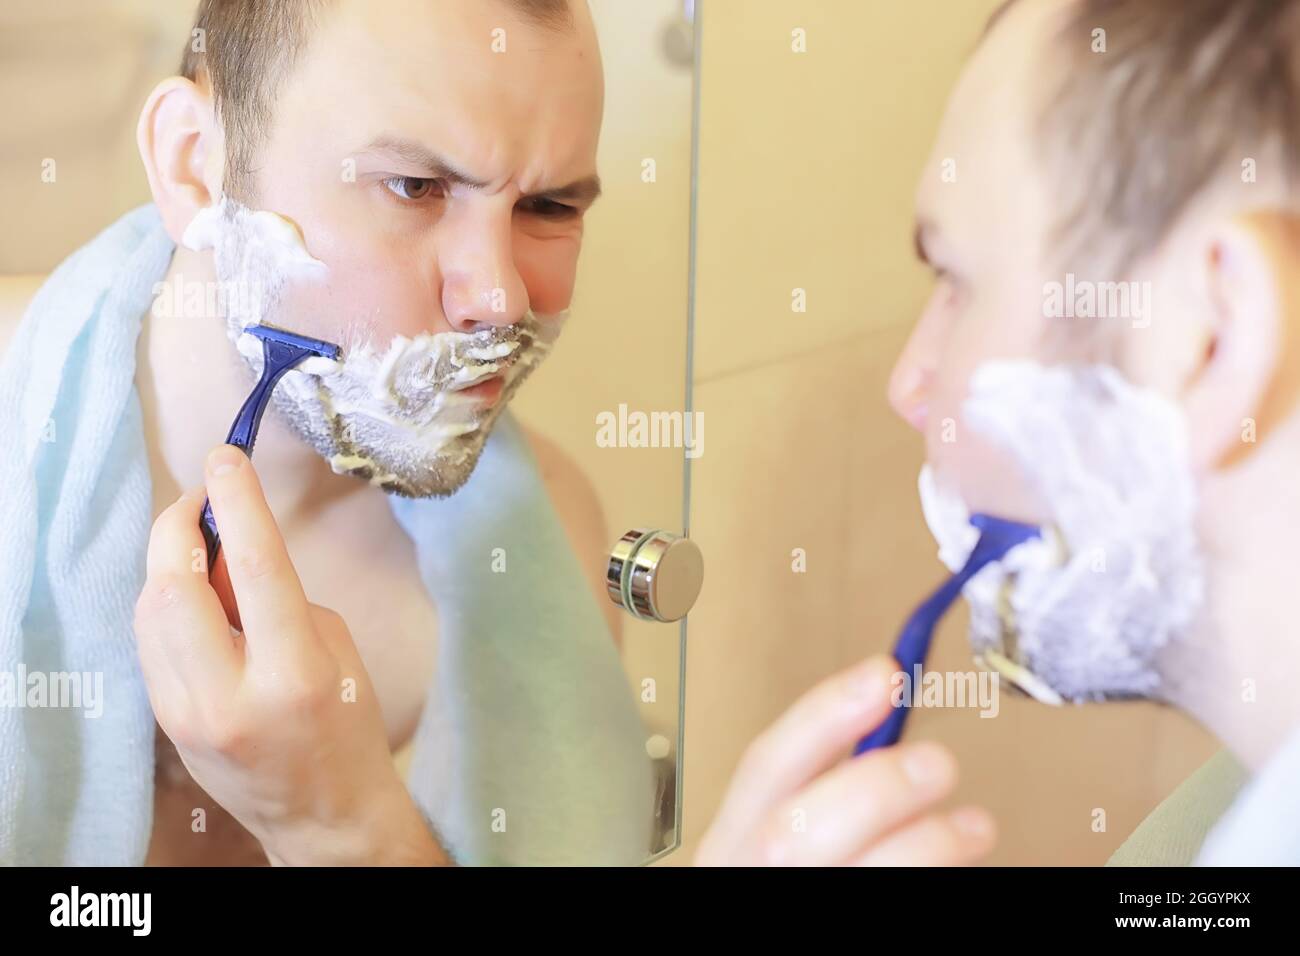 Брею мужу видео. Парень бреется. Фотосет мужчина бреется. Бородатый мужчина бреется в ванной. Мужик бреет многолетнюю бороду.